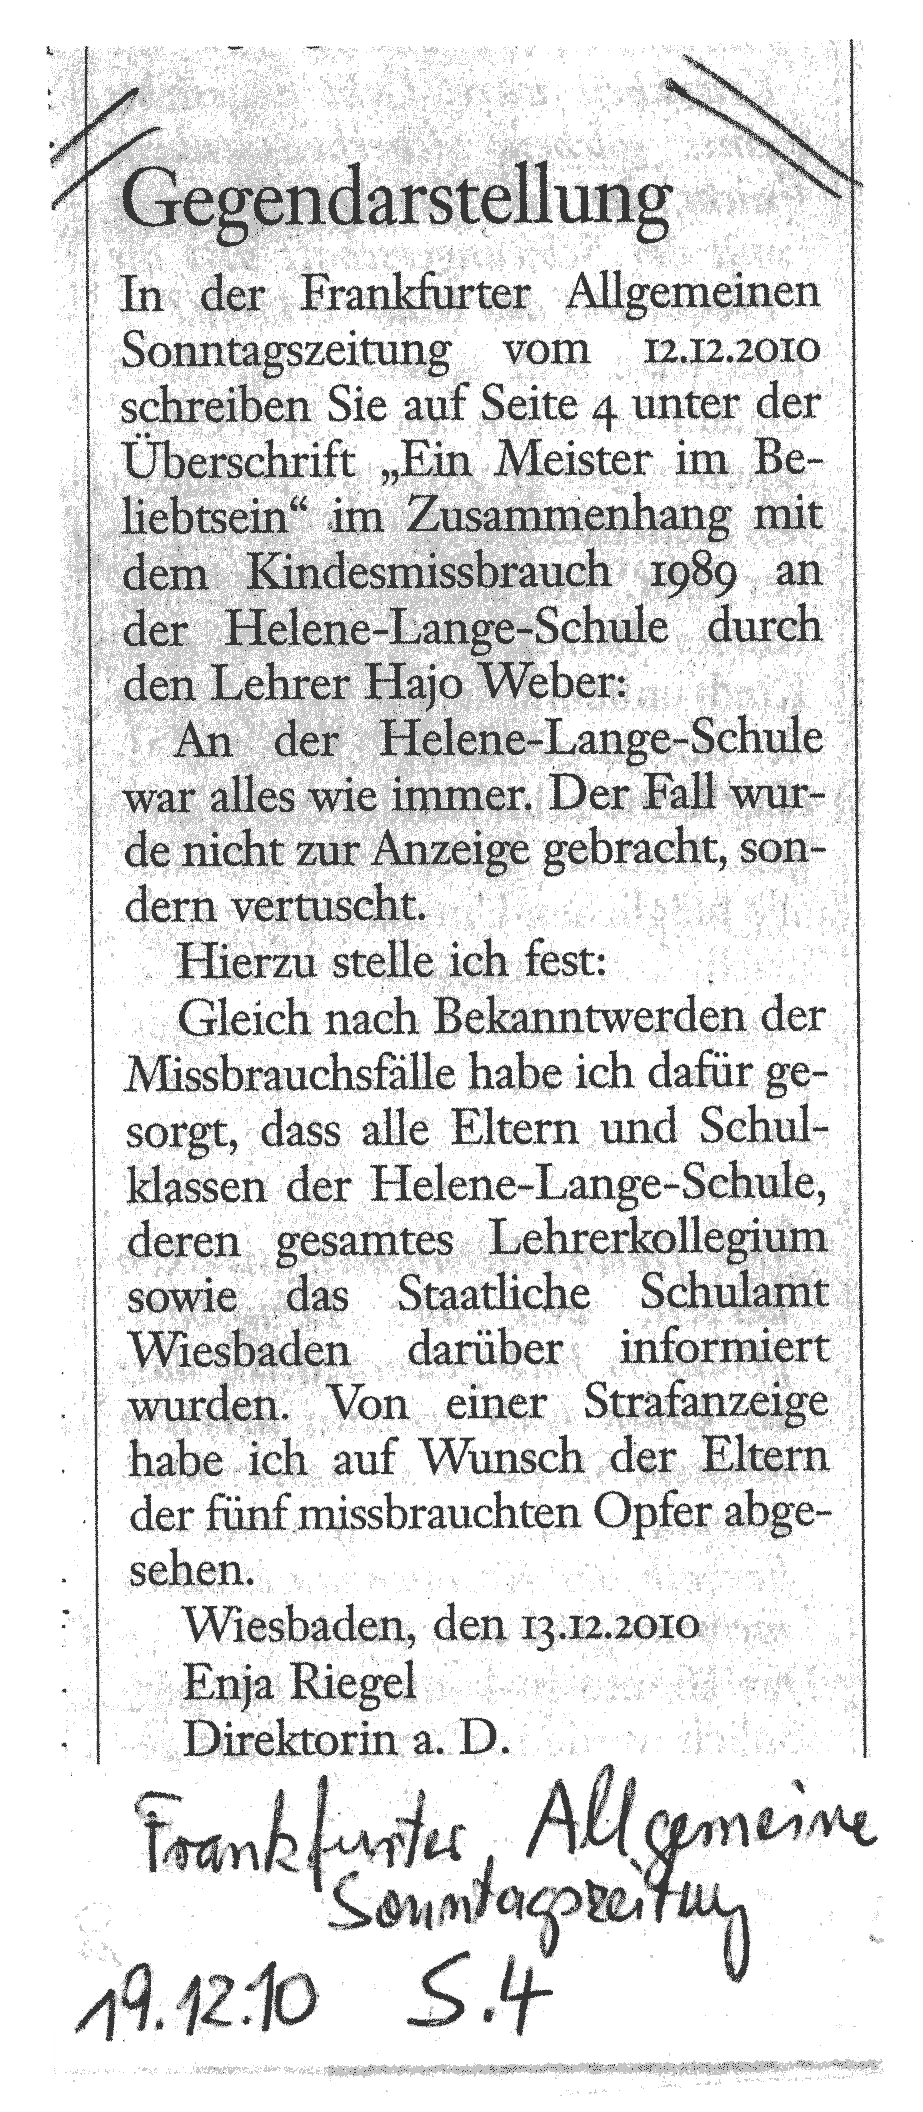 Gegendarstellung in der "Frankfurter Allgemeinen Sonntagszeitung vom 19.12.2010